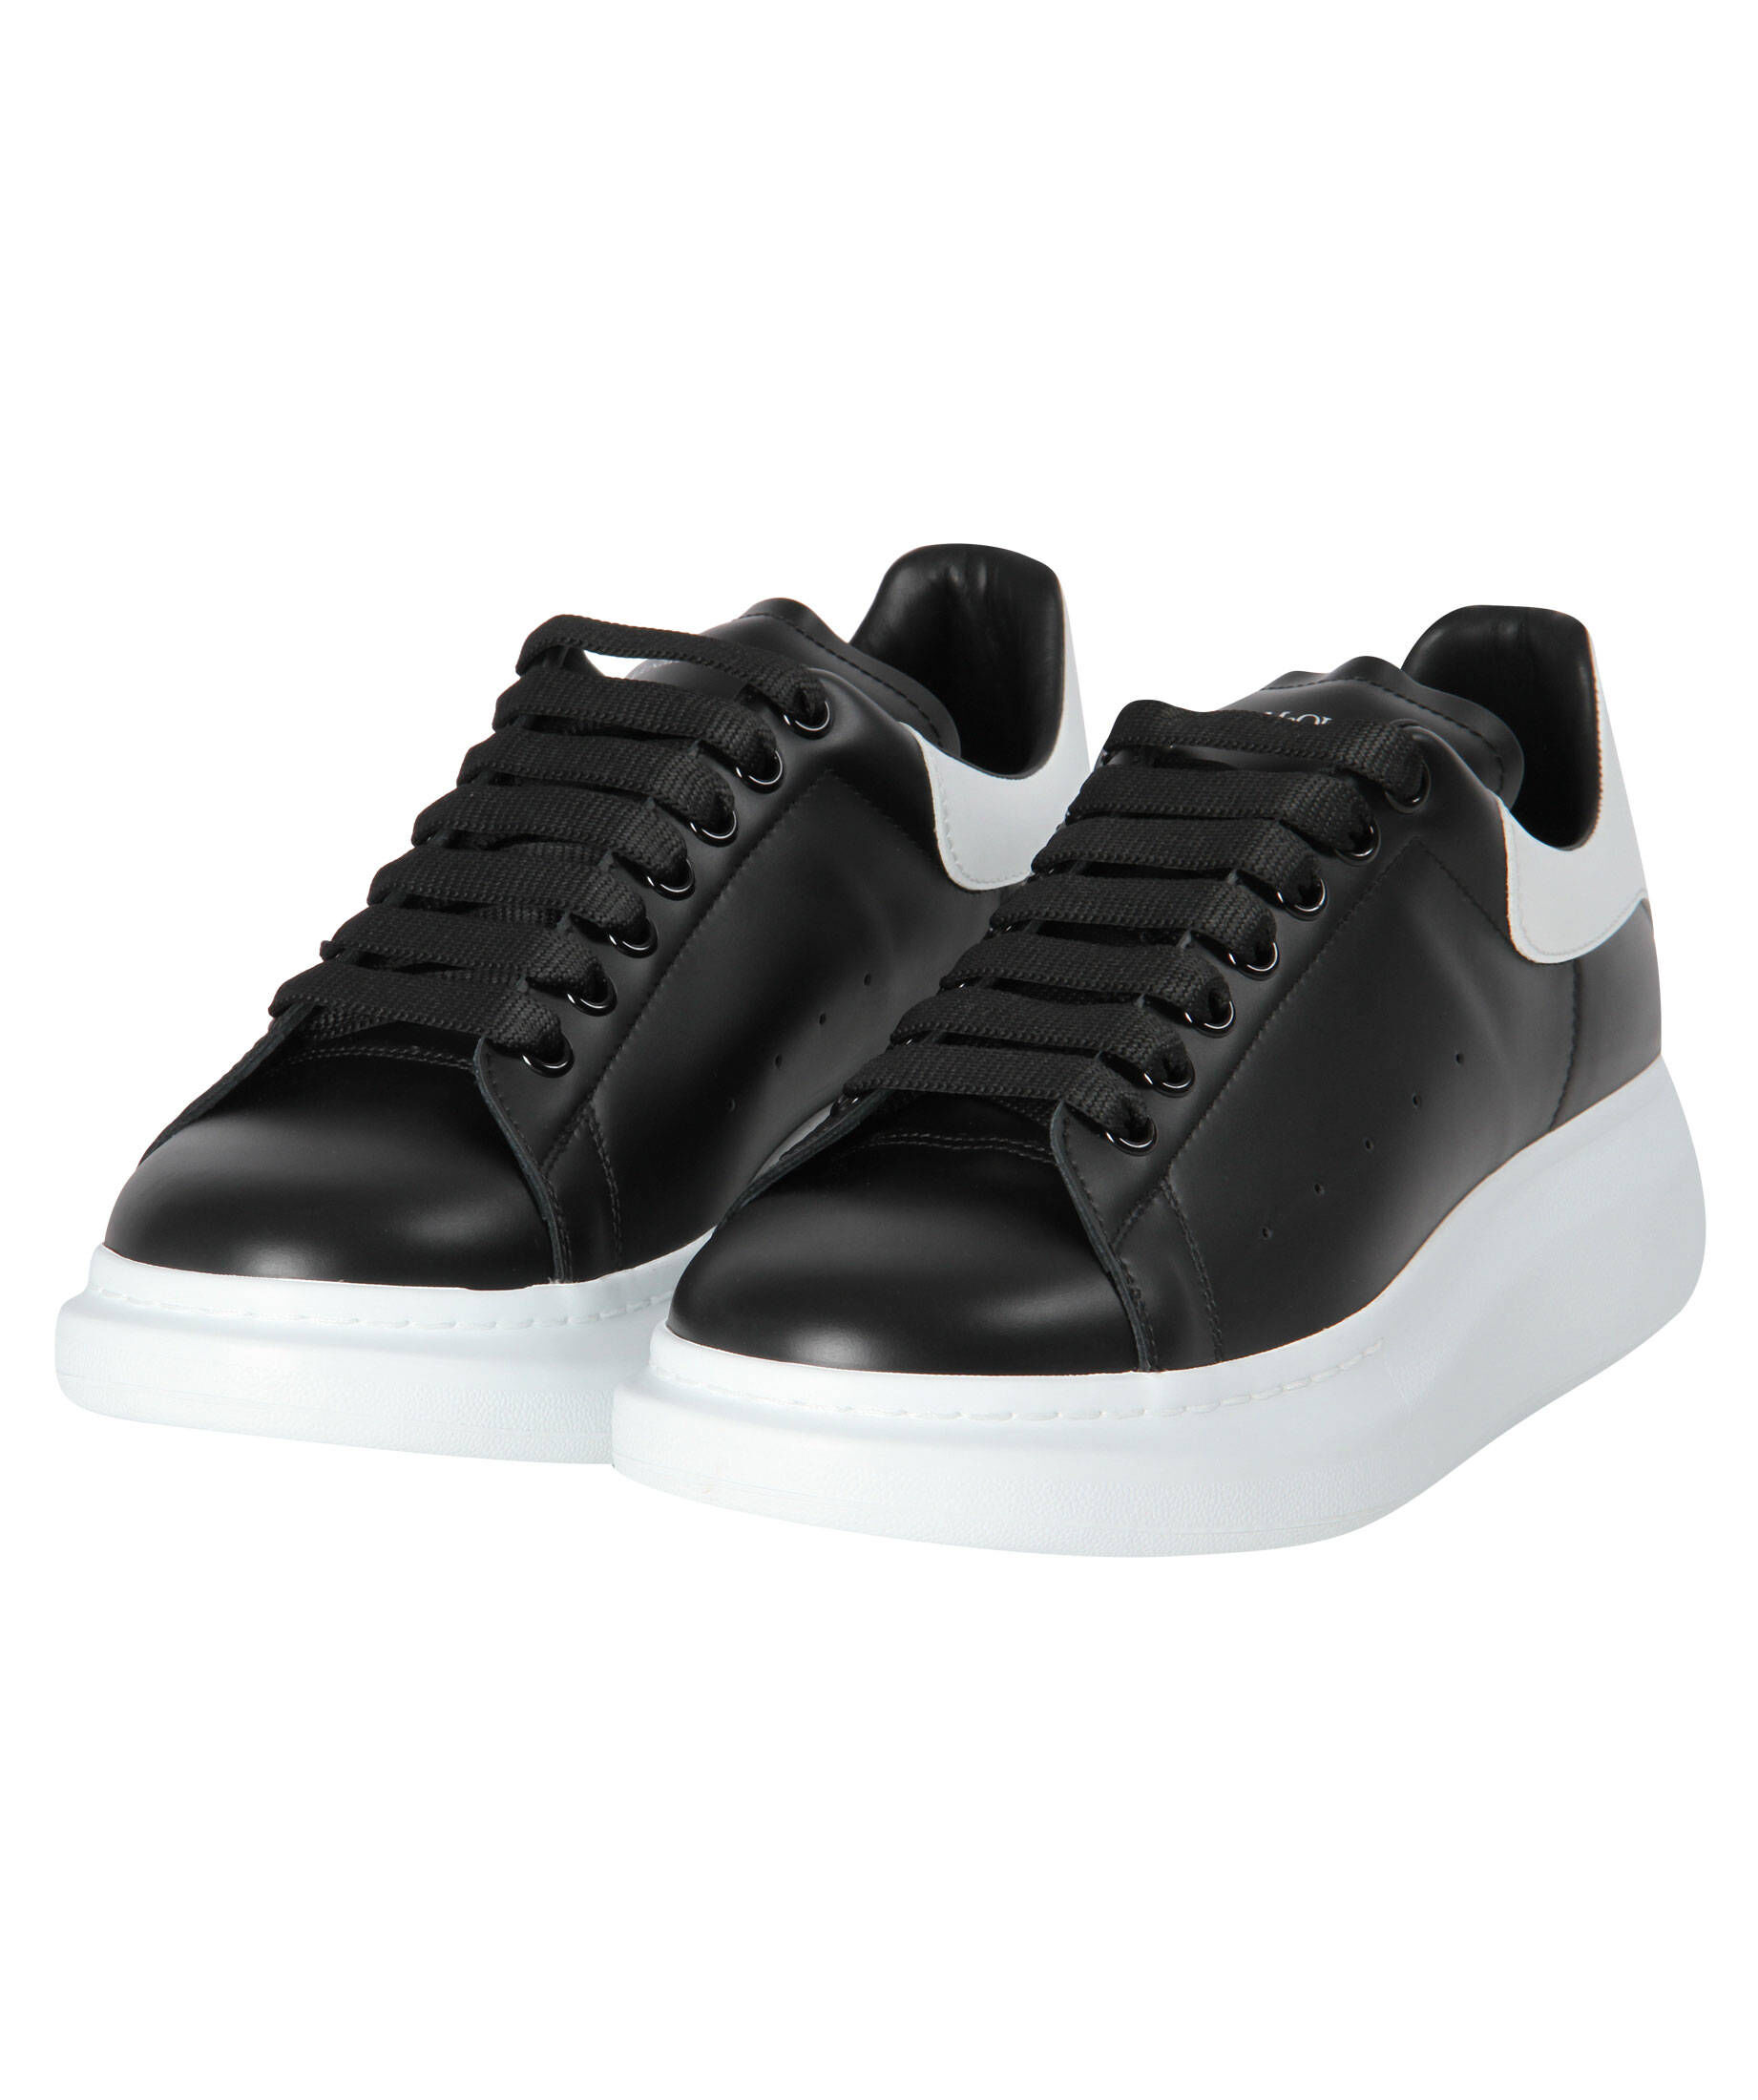 Alexander McQueen - Herren Sneakers - Blau - 705117WID6I-8827 | FRMODA.COM